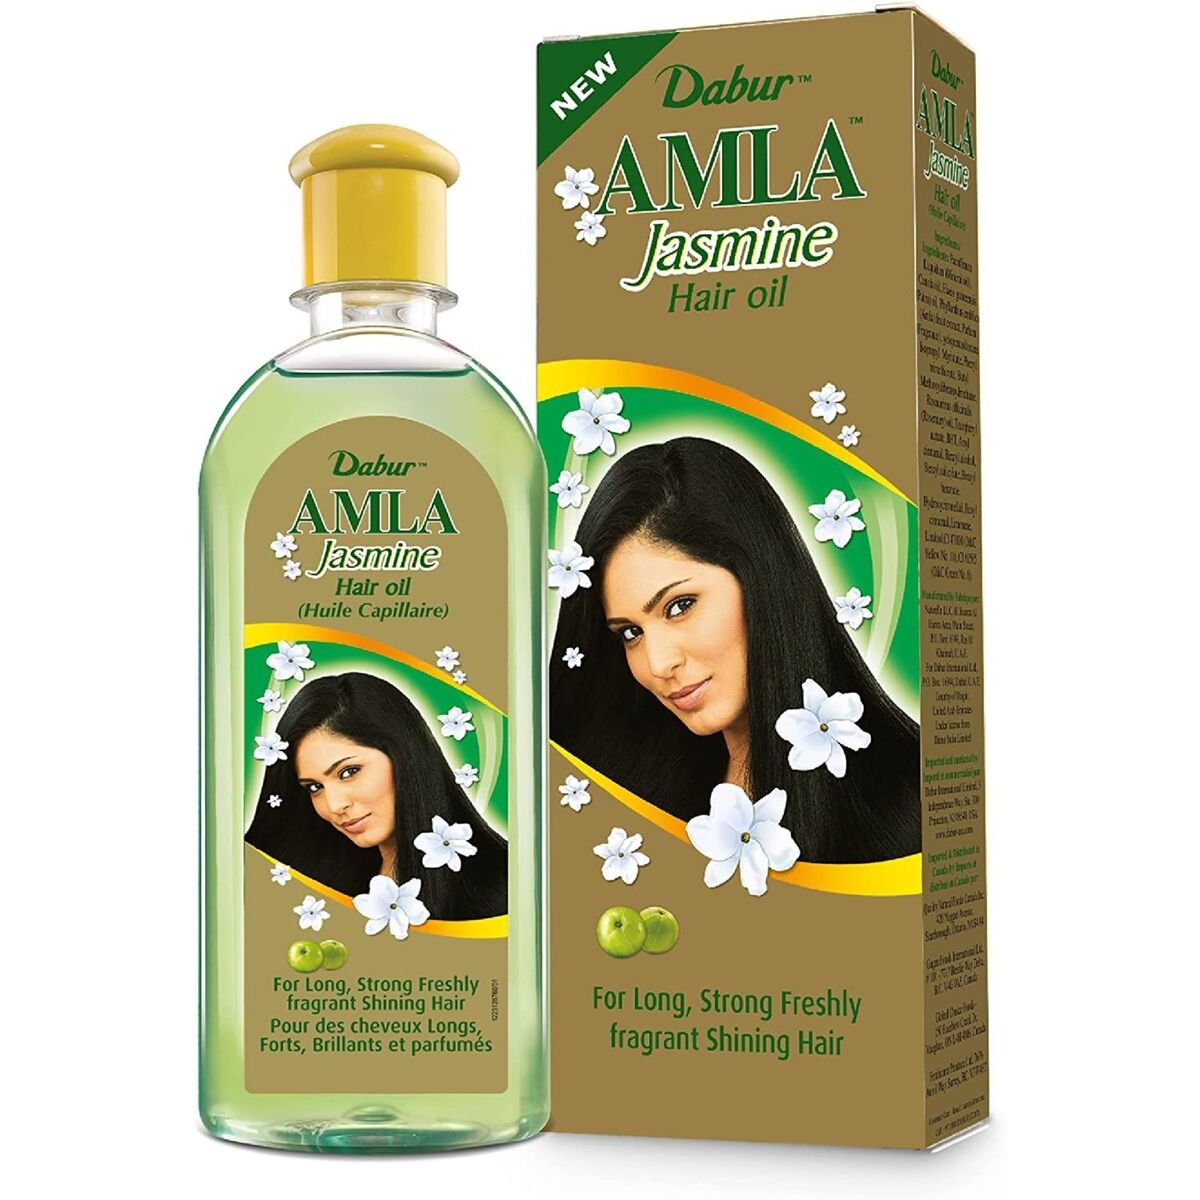 اشتري قم بشراء دابر املا زيت شعر بالياسمين 200 مل Online at Best Price من الموقع - من لولو هايبر ماركت Hair Oils في السعودية